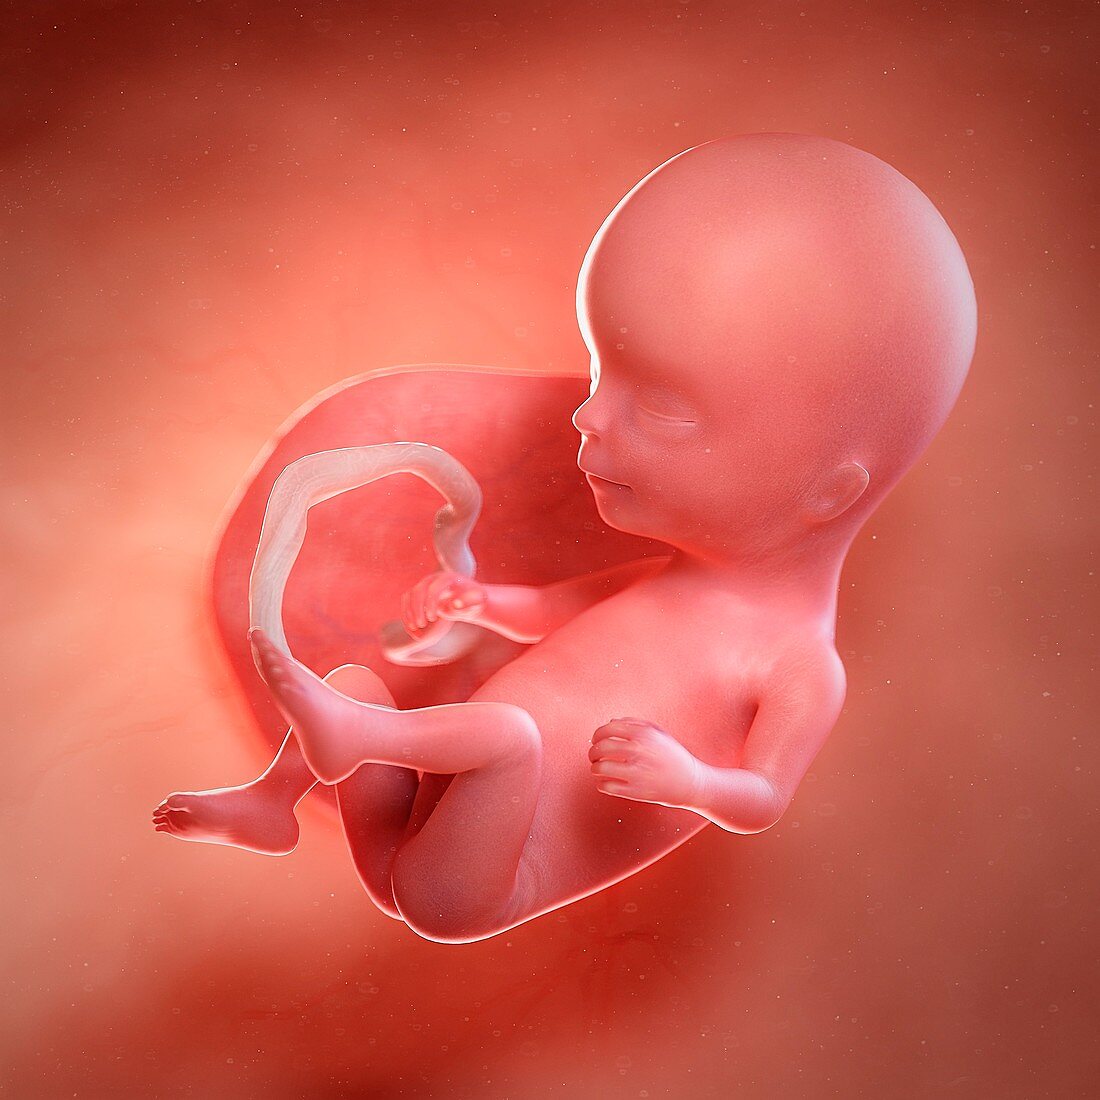 Human foetus age 14 weeks, illustration